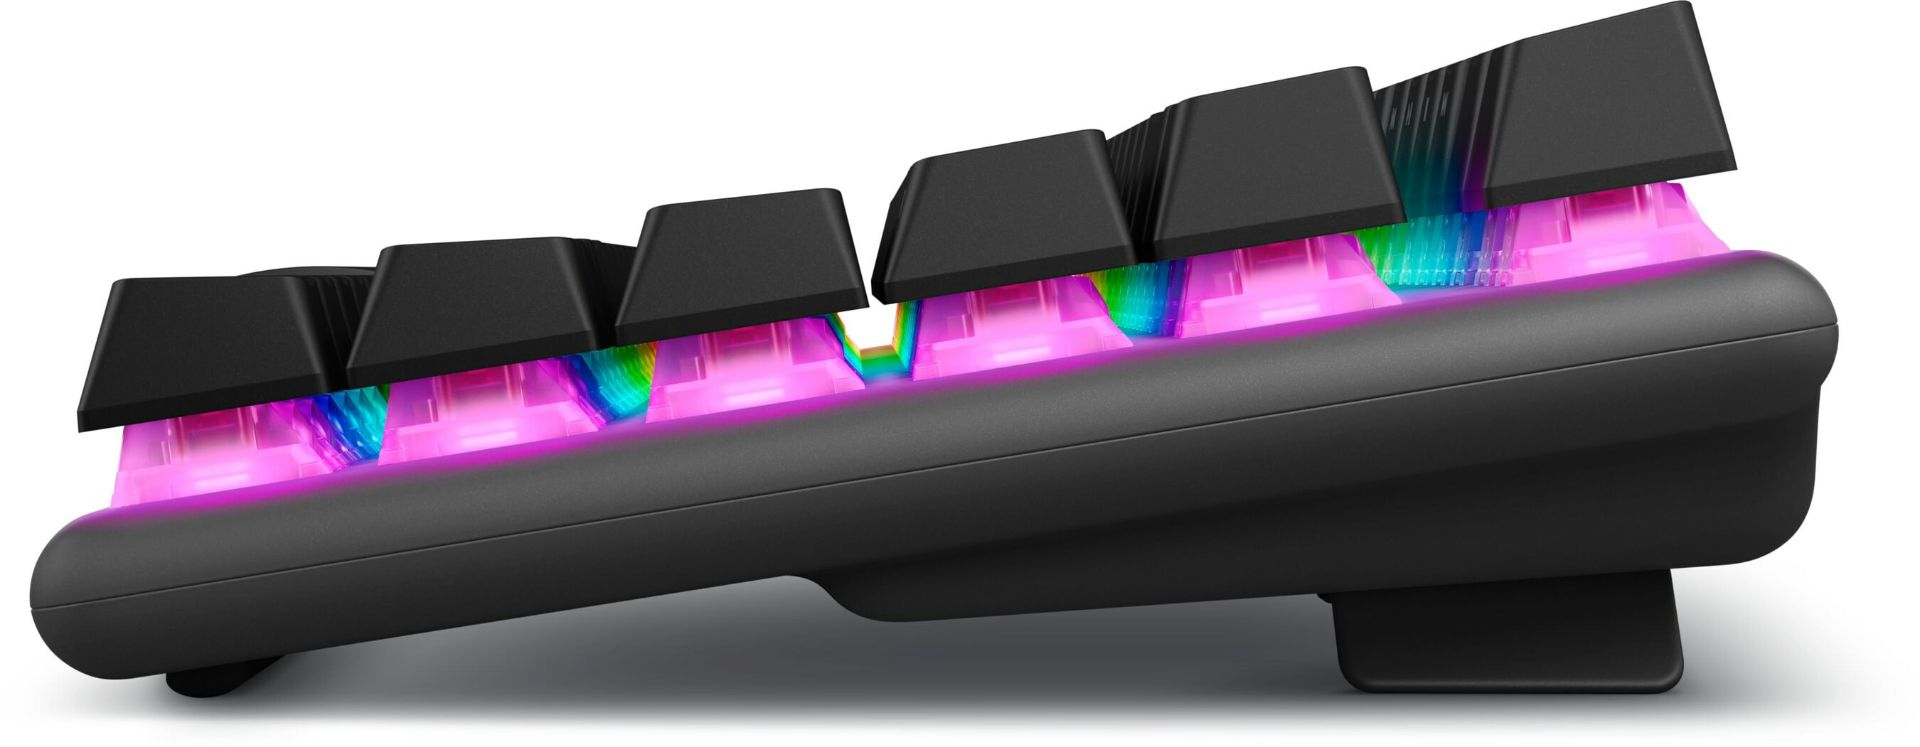 کیبورد Pro Wireless الین ور مشکی با RGB روشن از نمای کنار